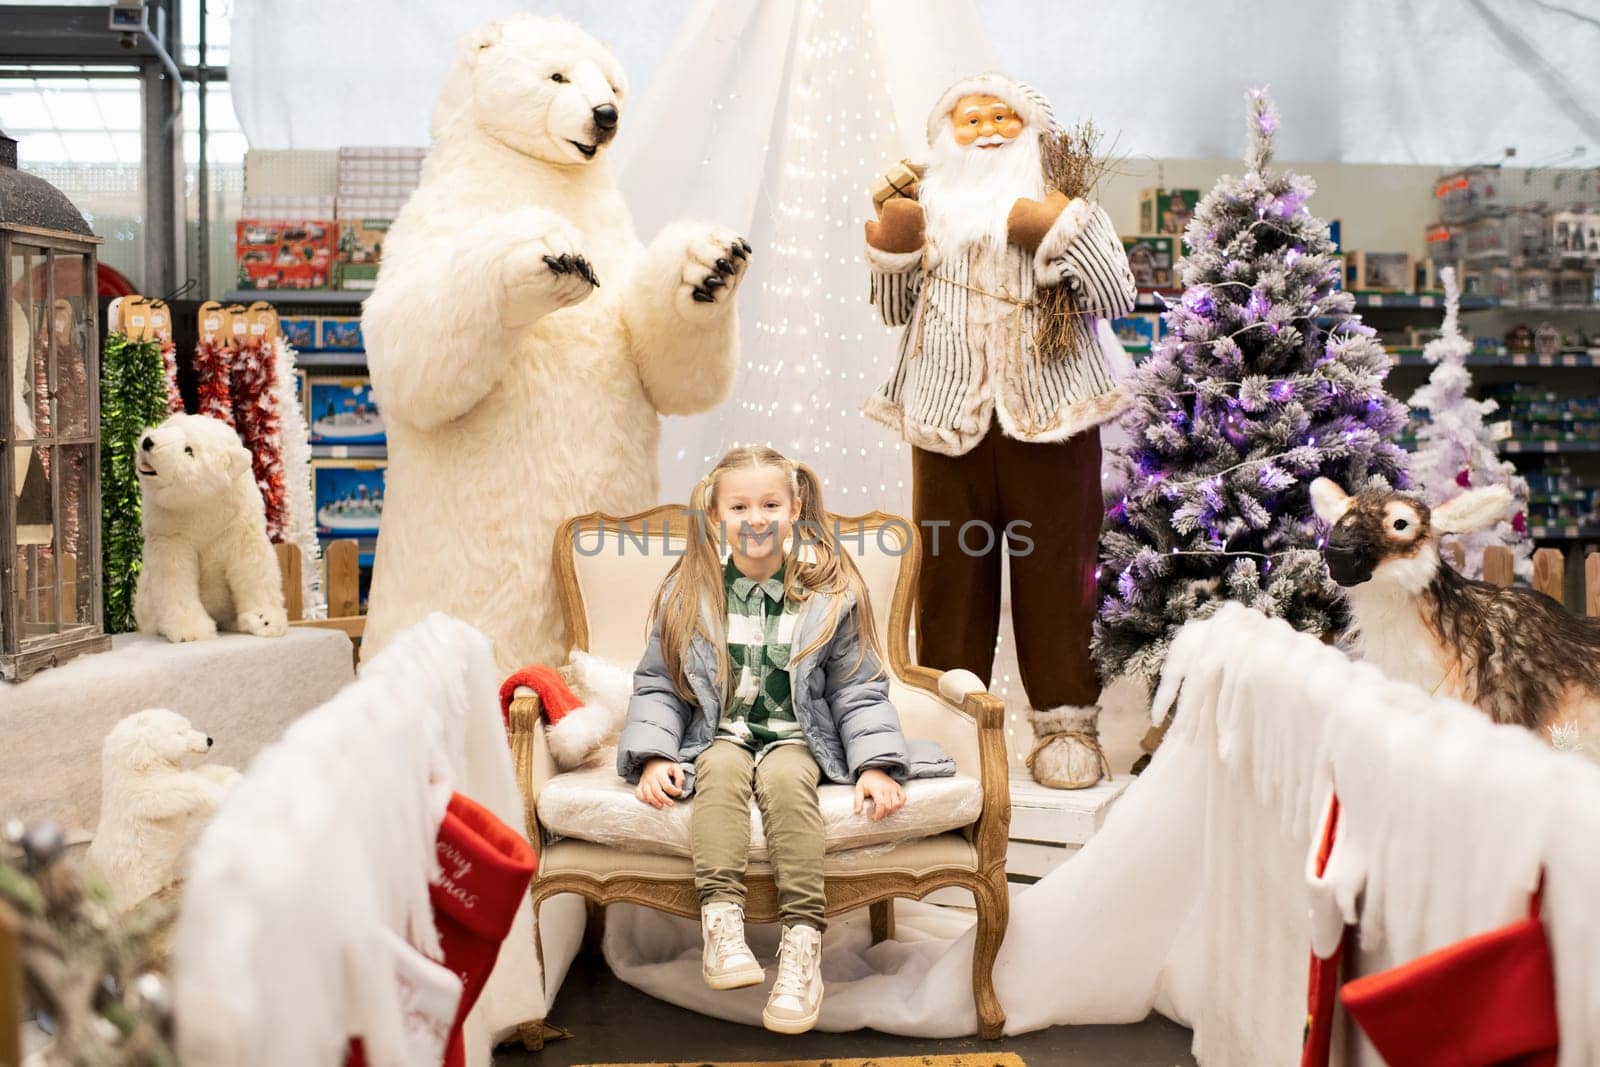 A girl visiting Santa Claus by Godi